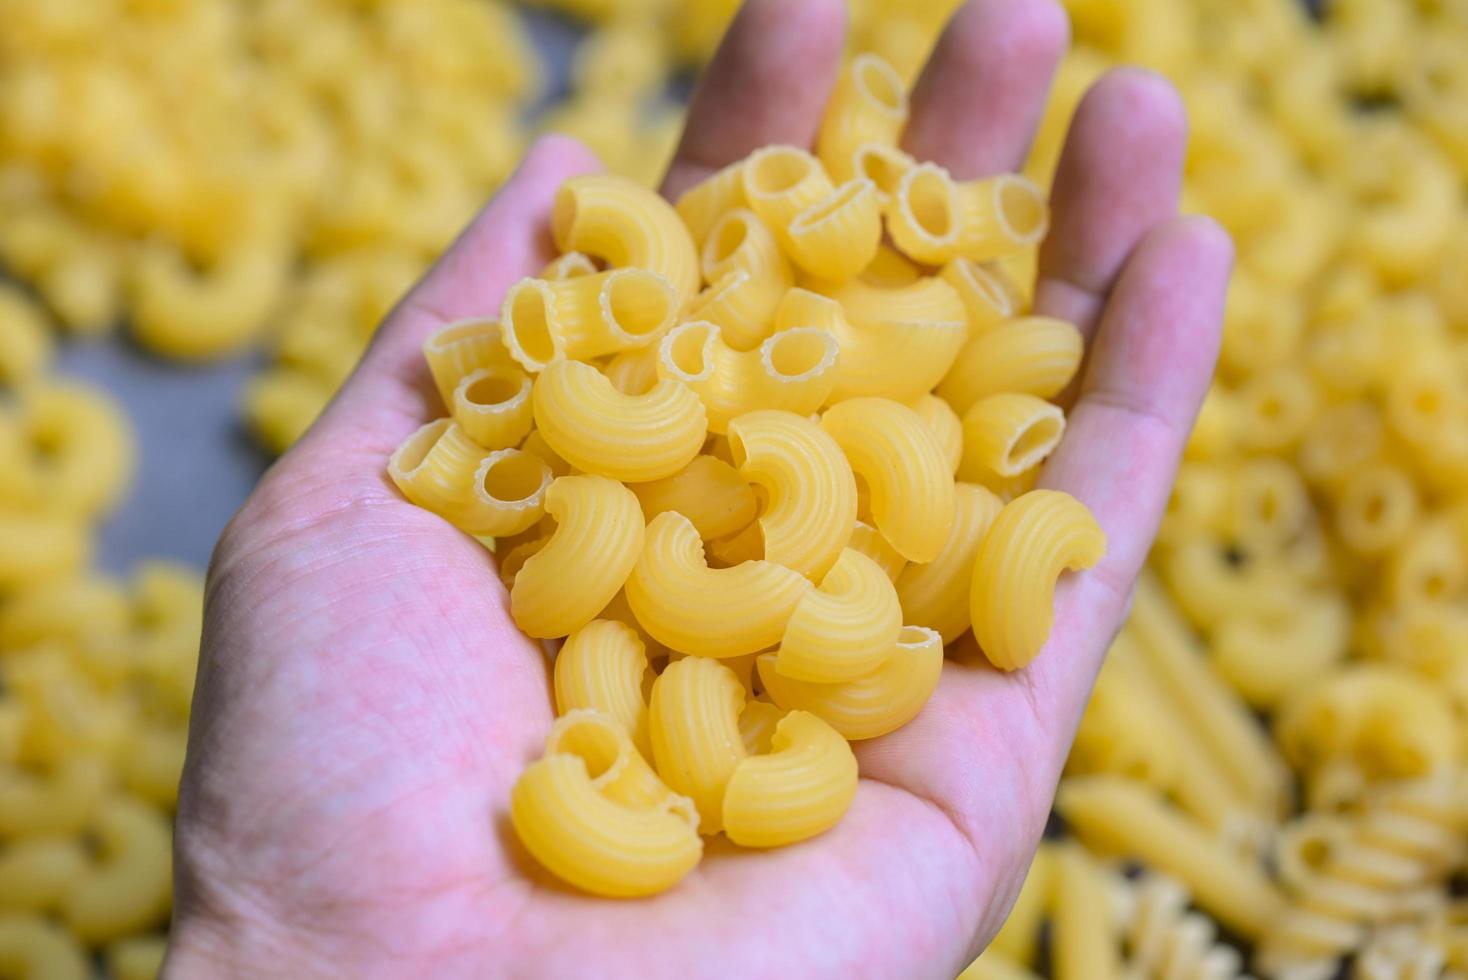 pâtes à la main et fond de macaroni cru, gros plan de pâtes macaroni crues pâtes délicieuses non cuites pour la cuisson des aliments photo